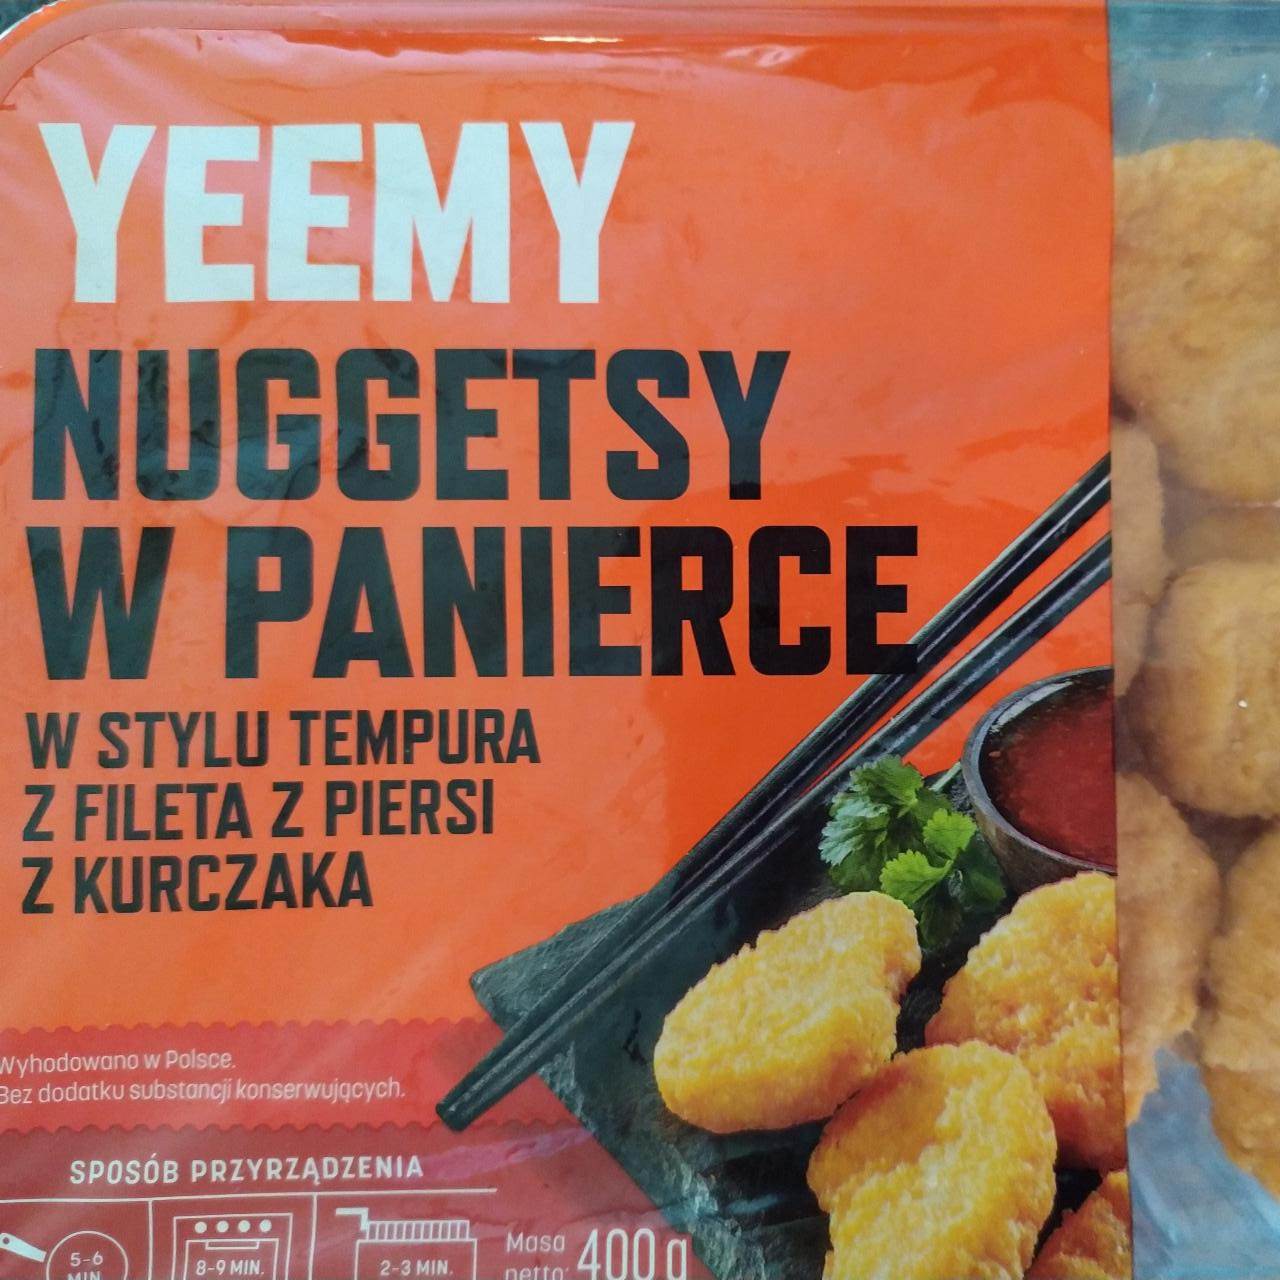 Zdjęcia - Nuggetsy w panierce w stylu tempura z fileta z piersi z kurczaka Yeemy